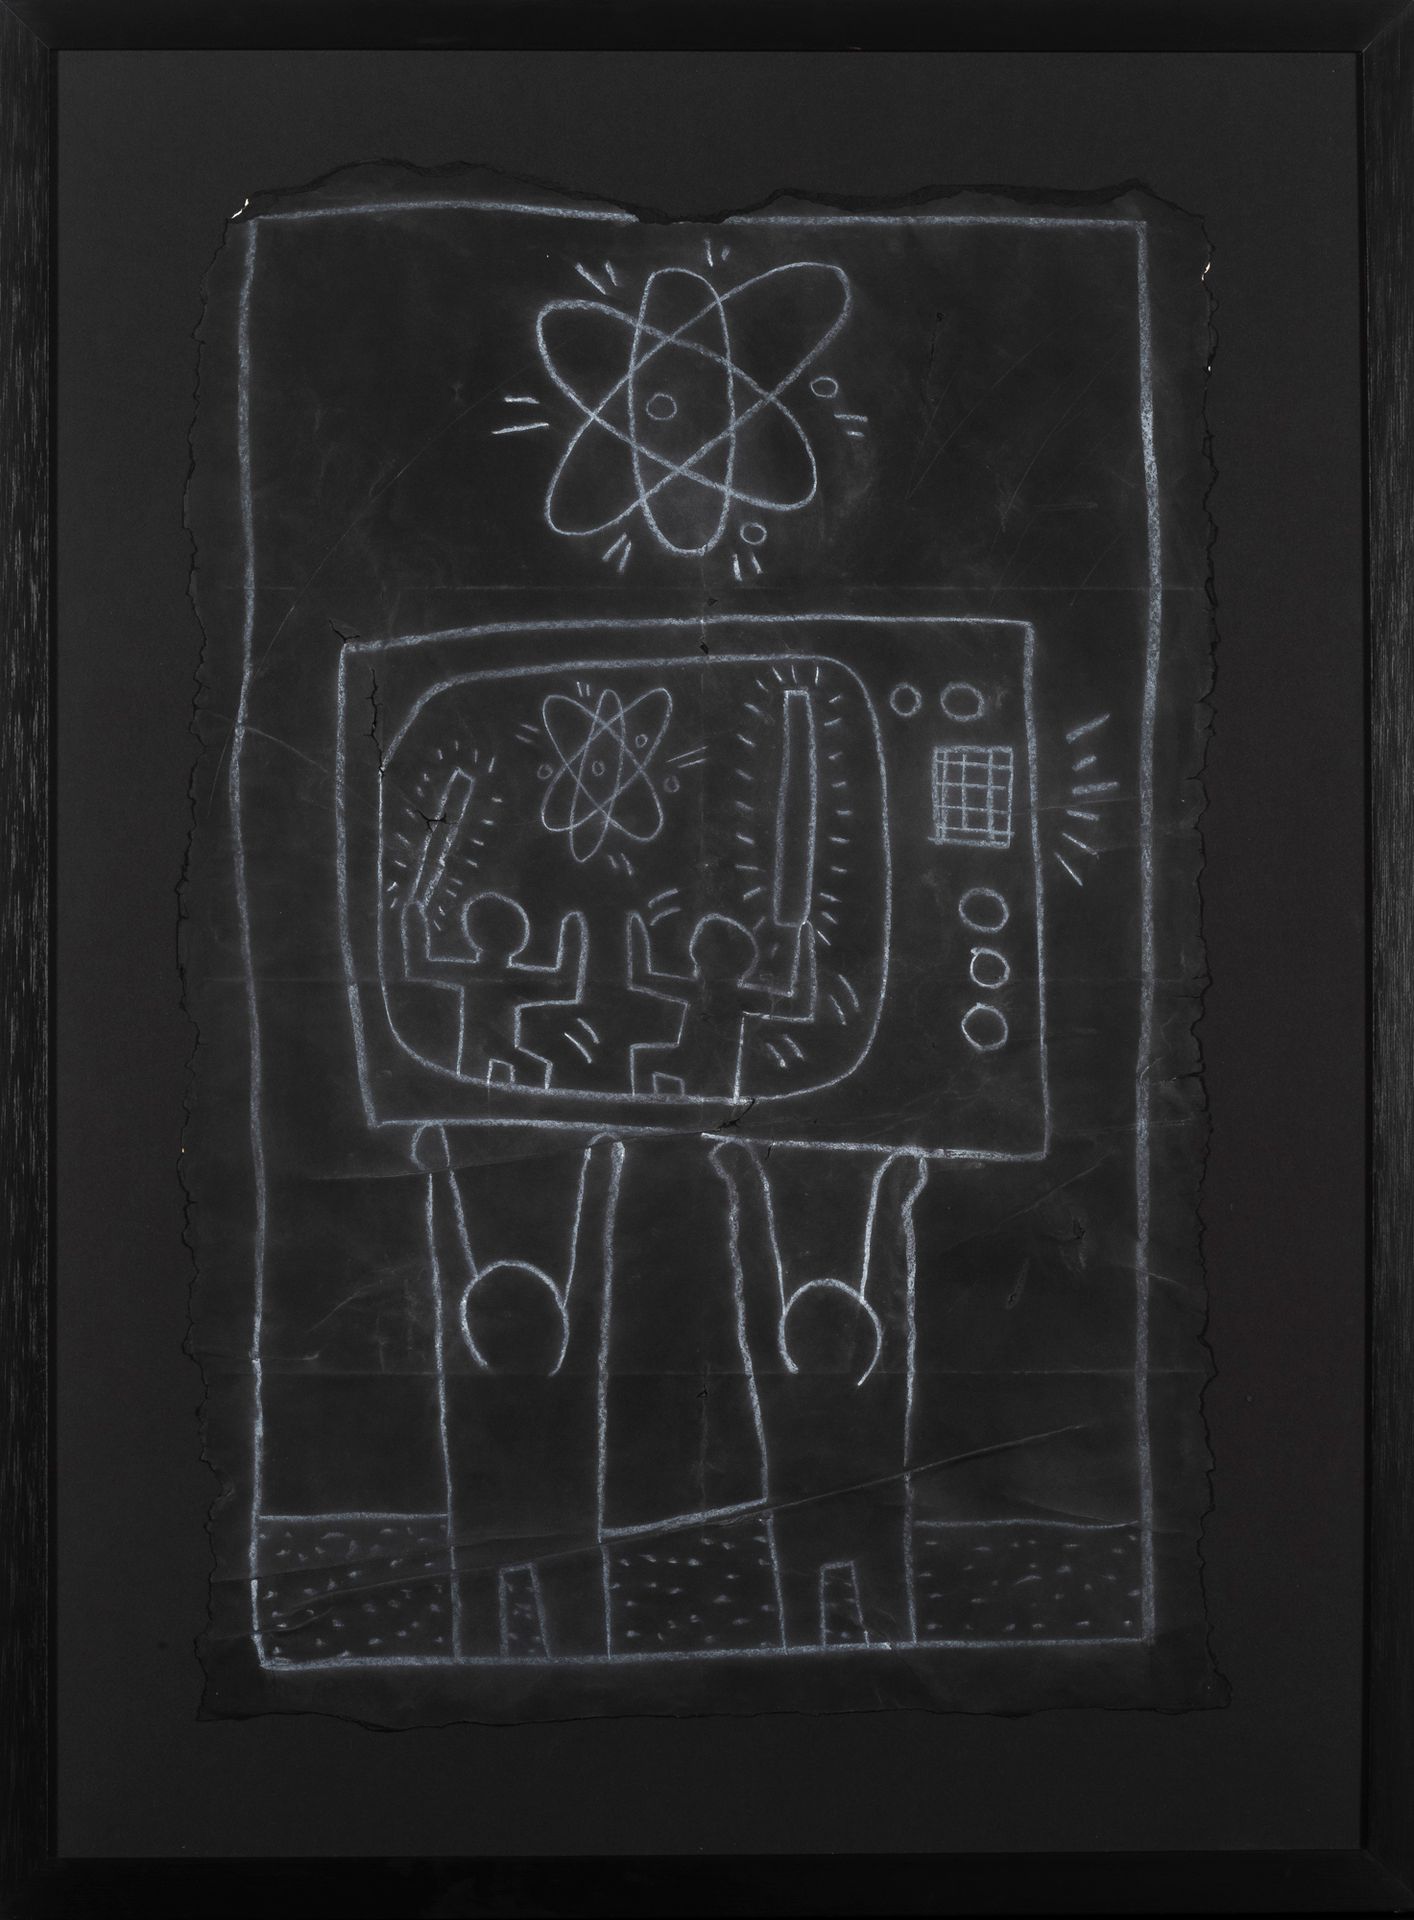 Keith Haring (1958-1990) 地铁画
黑纸上的粉笔画。
Krijt op zwart papier.
105 x 75 cm
出处/Herk&hellip;